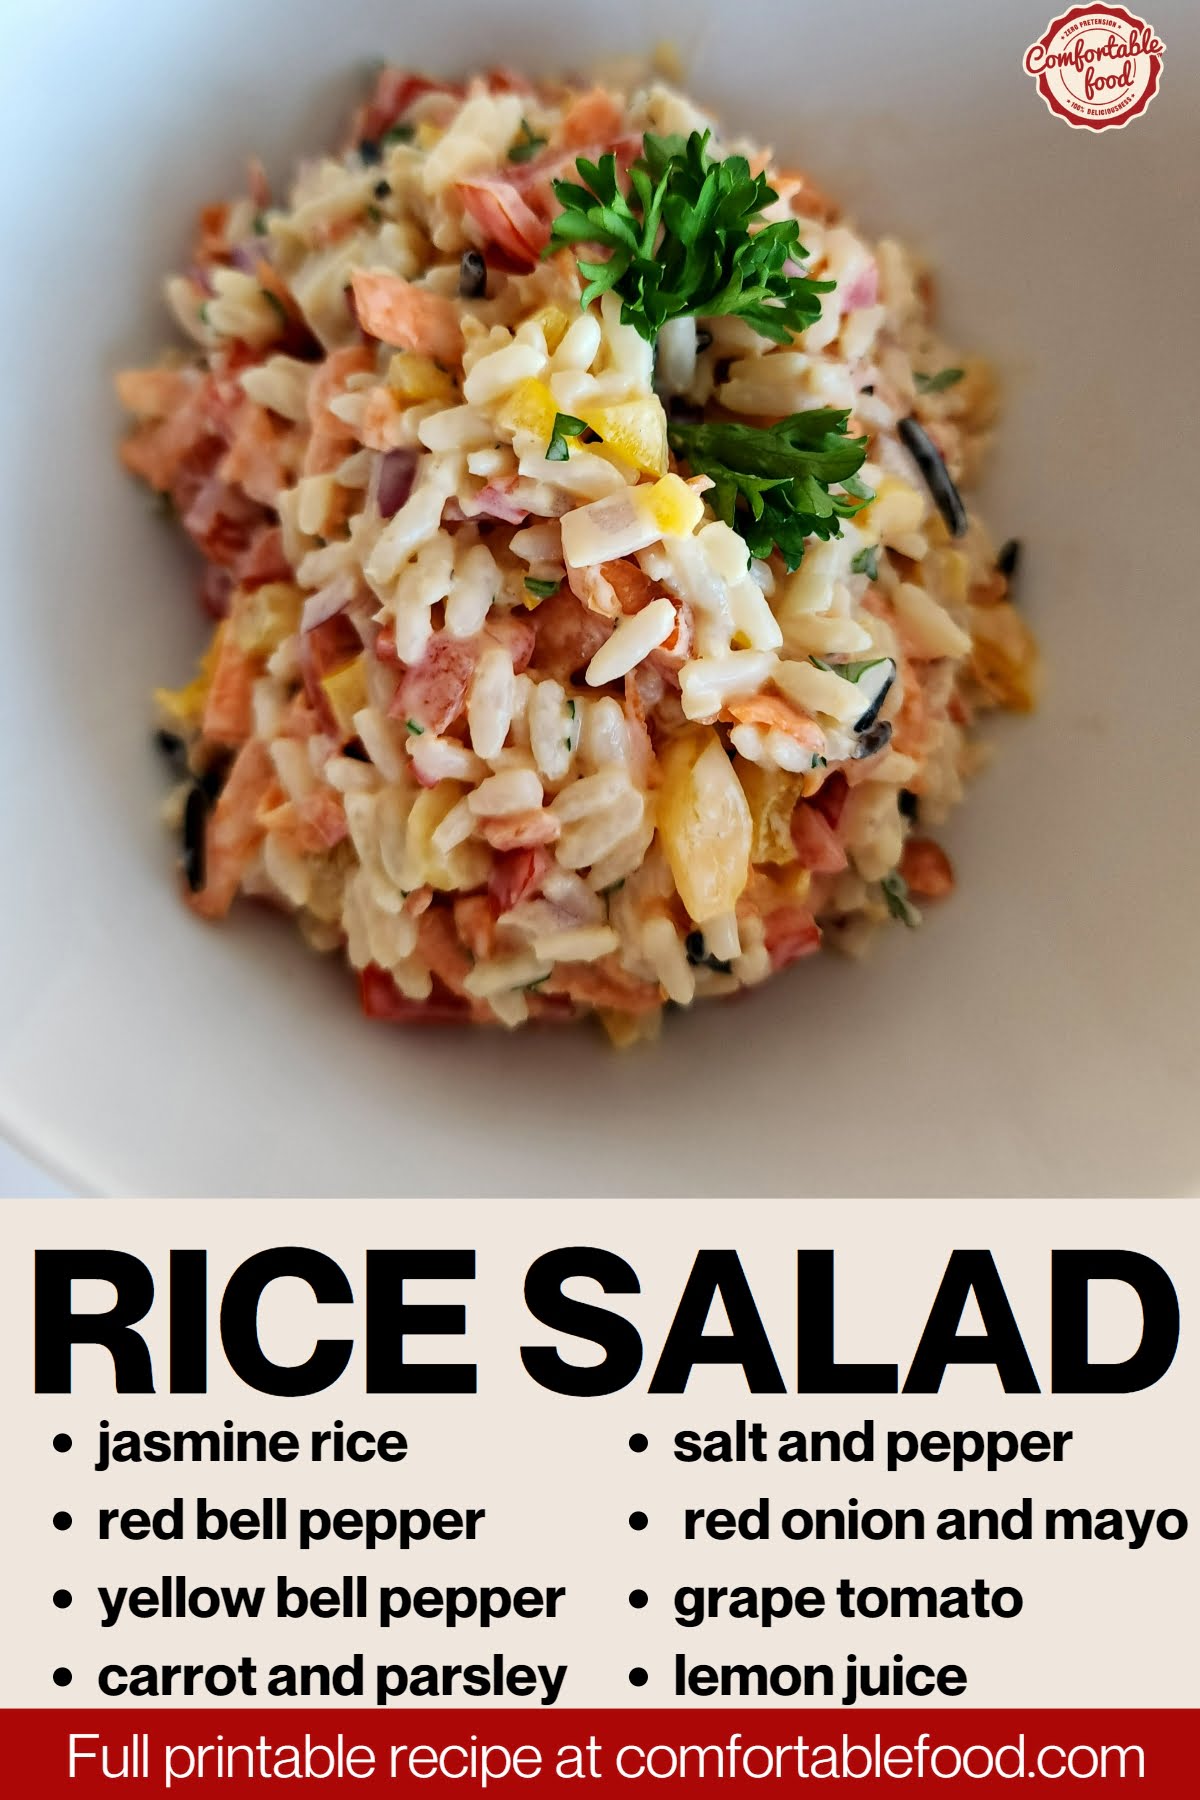 Rice salad socials